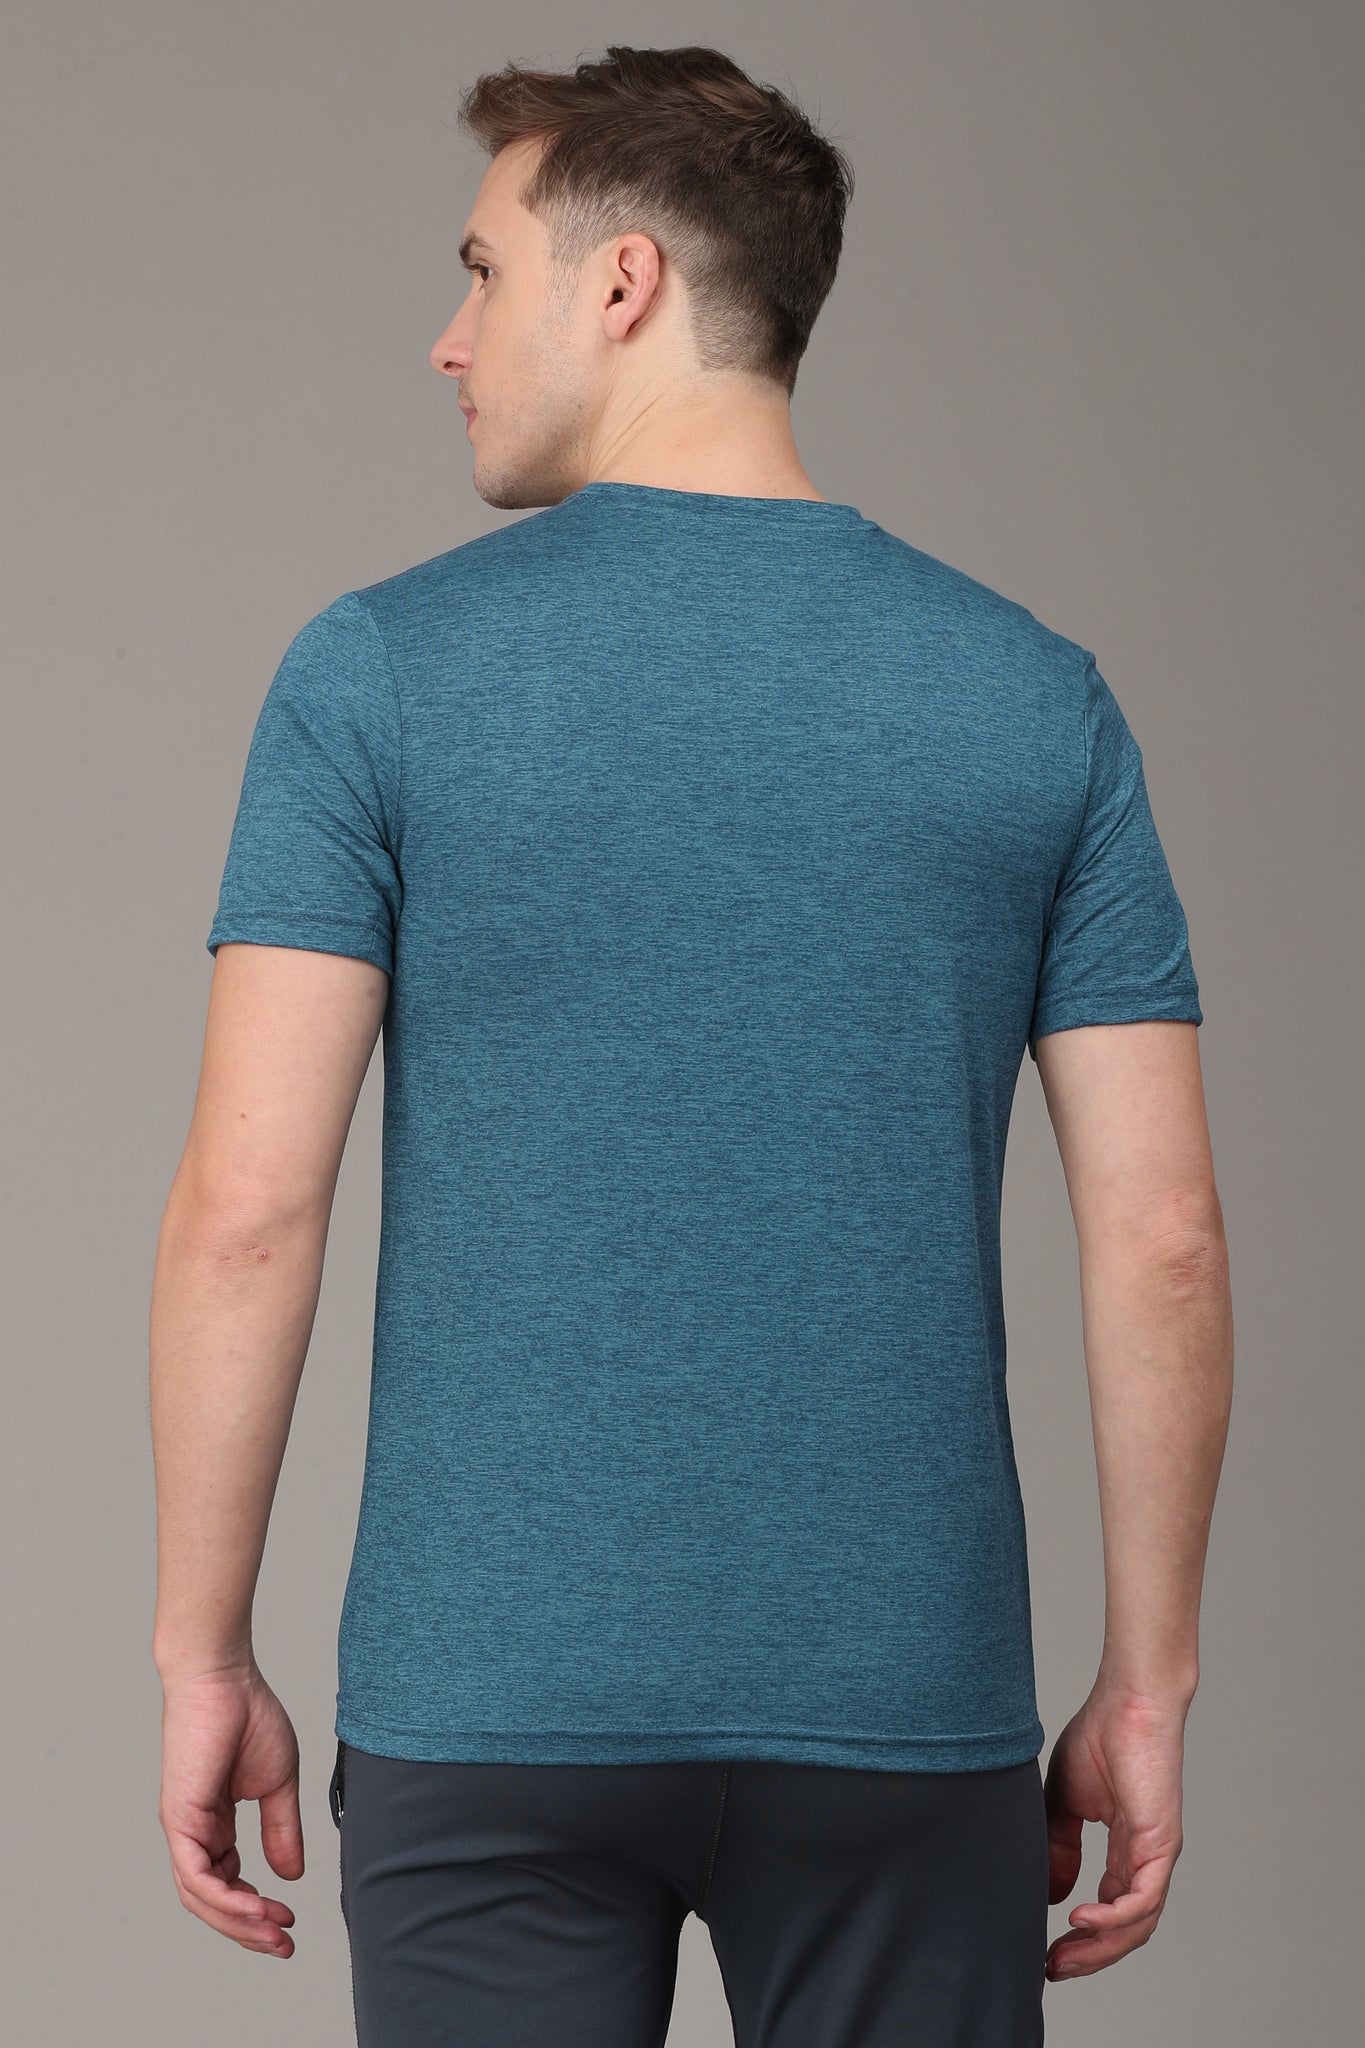 Indigo Blue V Neck T-Shirt